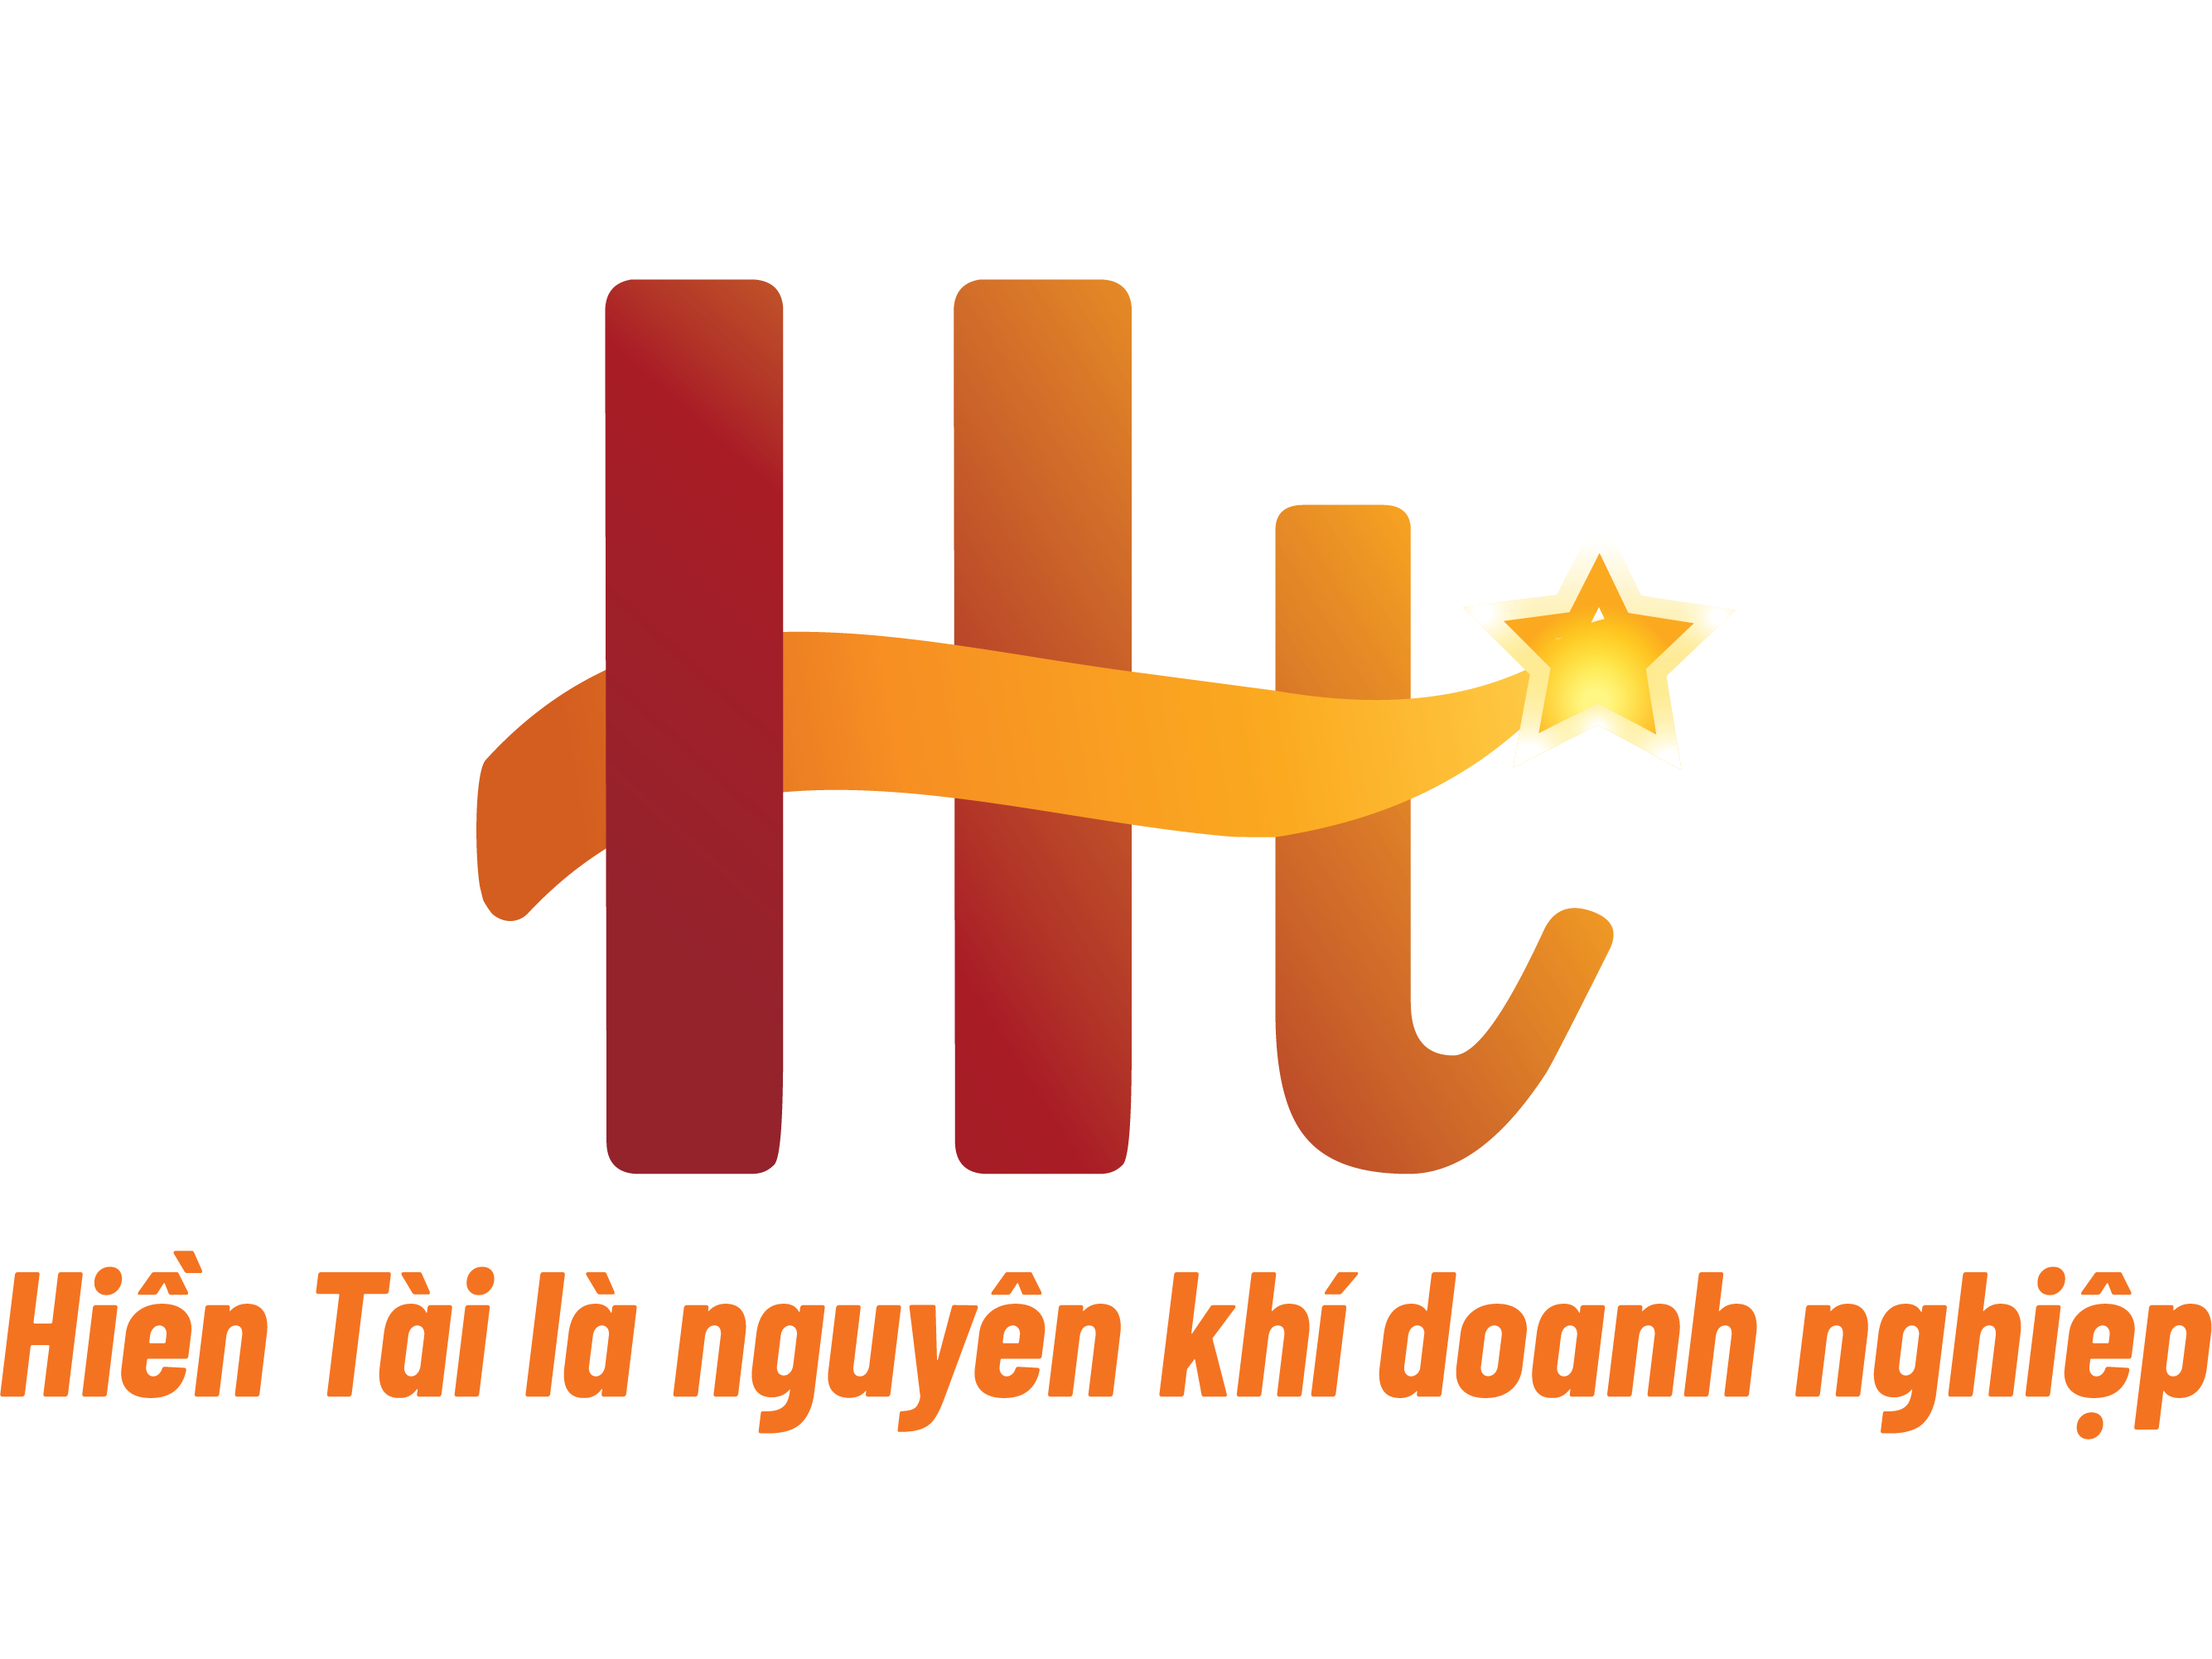 HR Hiền tài - Kênh cung cấp nguồn nhân lực nhanh và chất lượng nhất Việt Nam